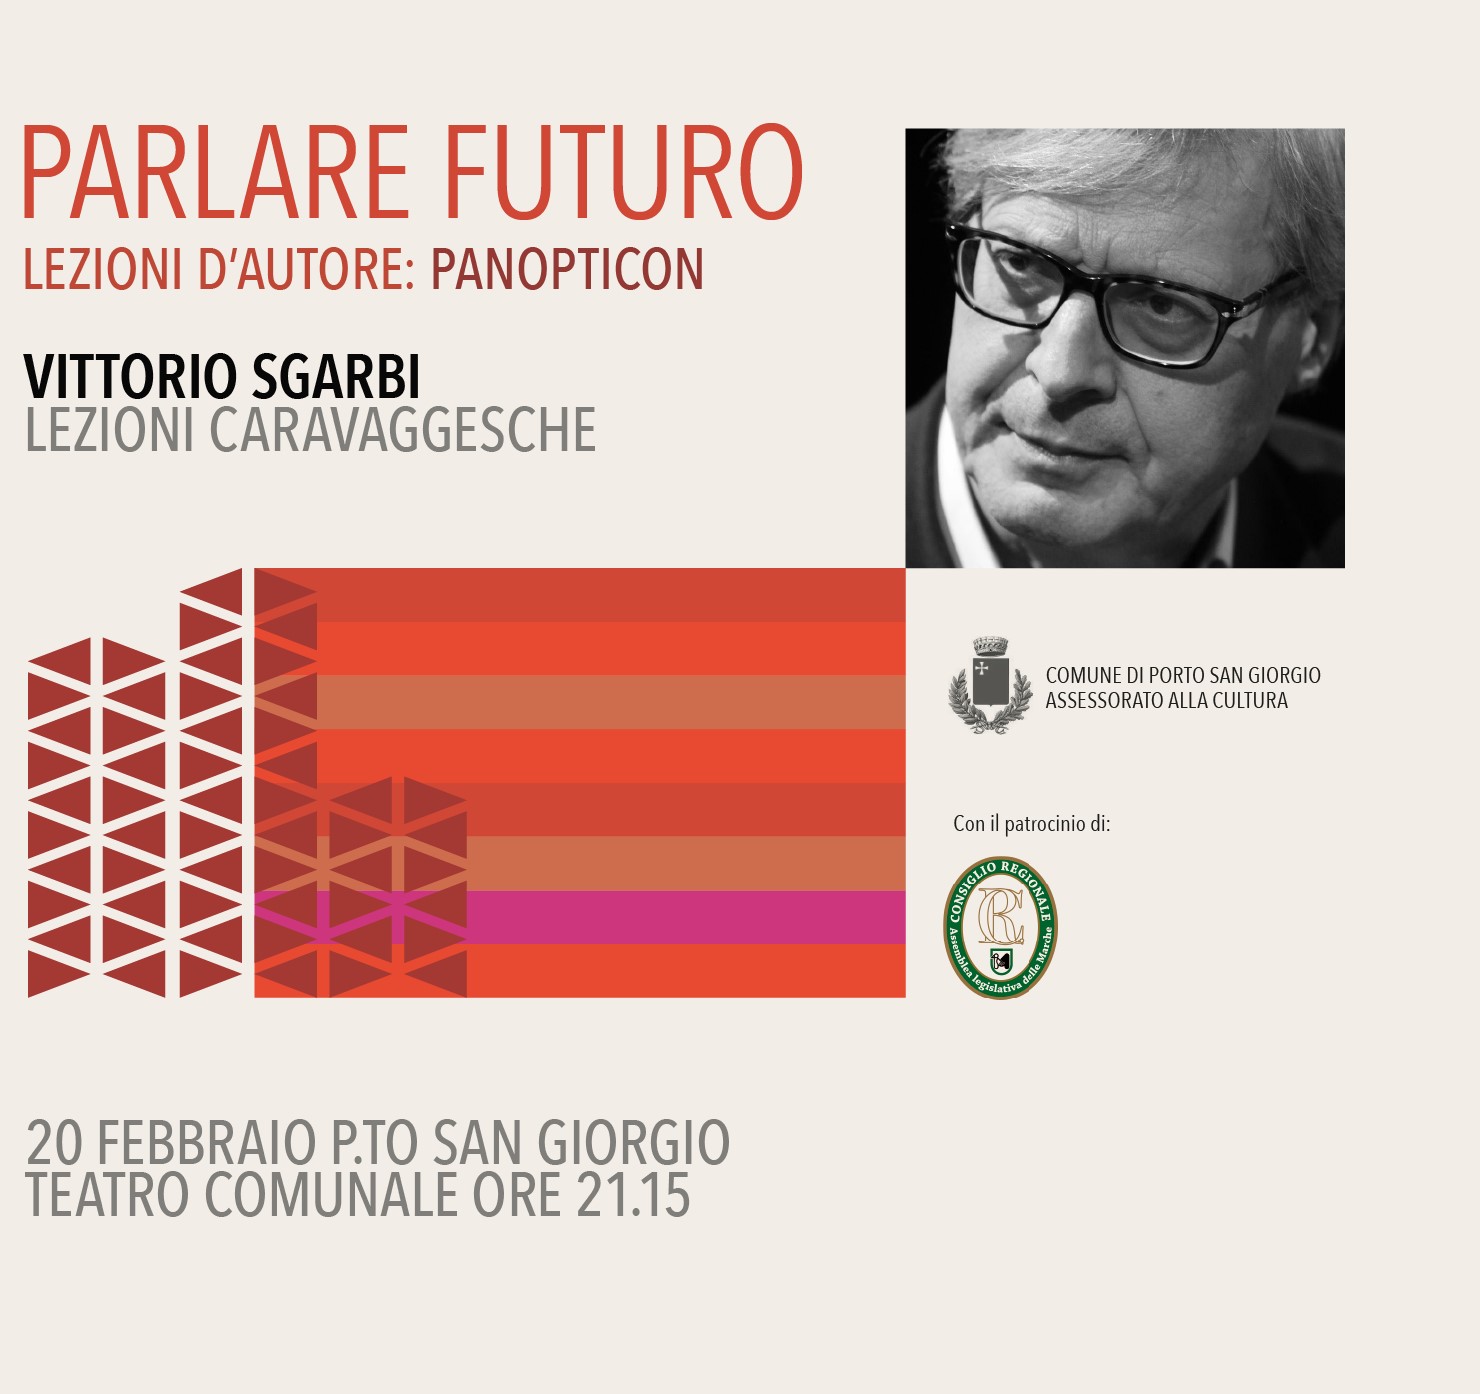 Lezioni caravaggesche: domani Vittorio Sgarbi a teatro per “Parlare Futuro”